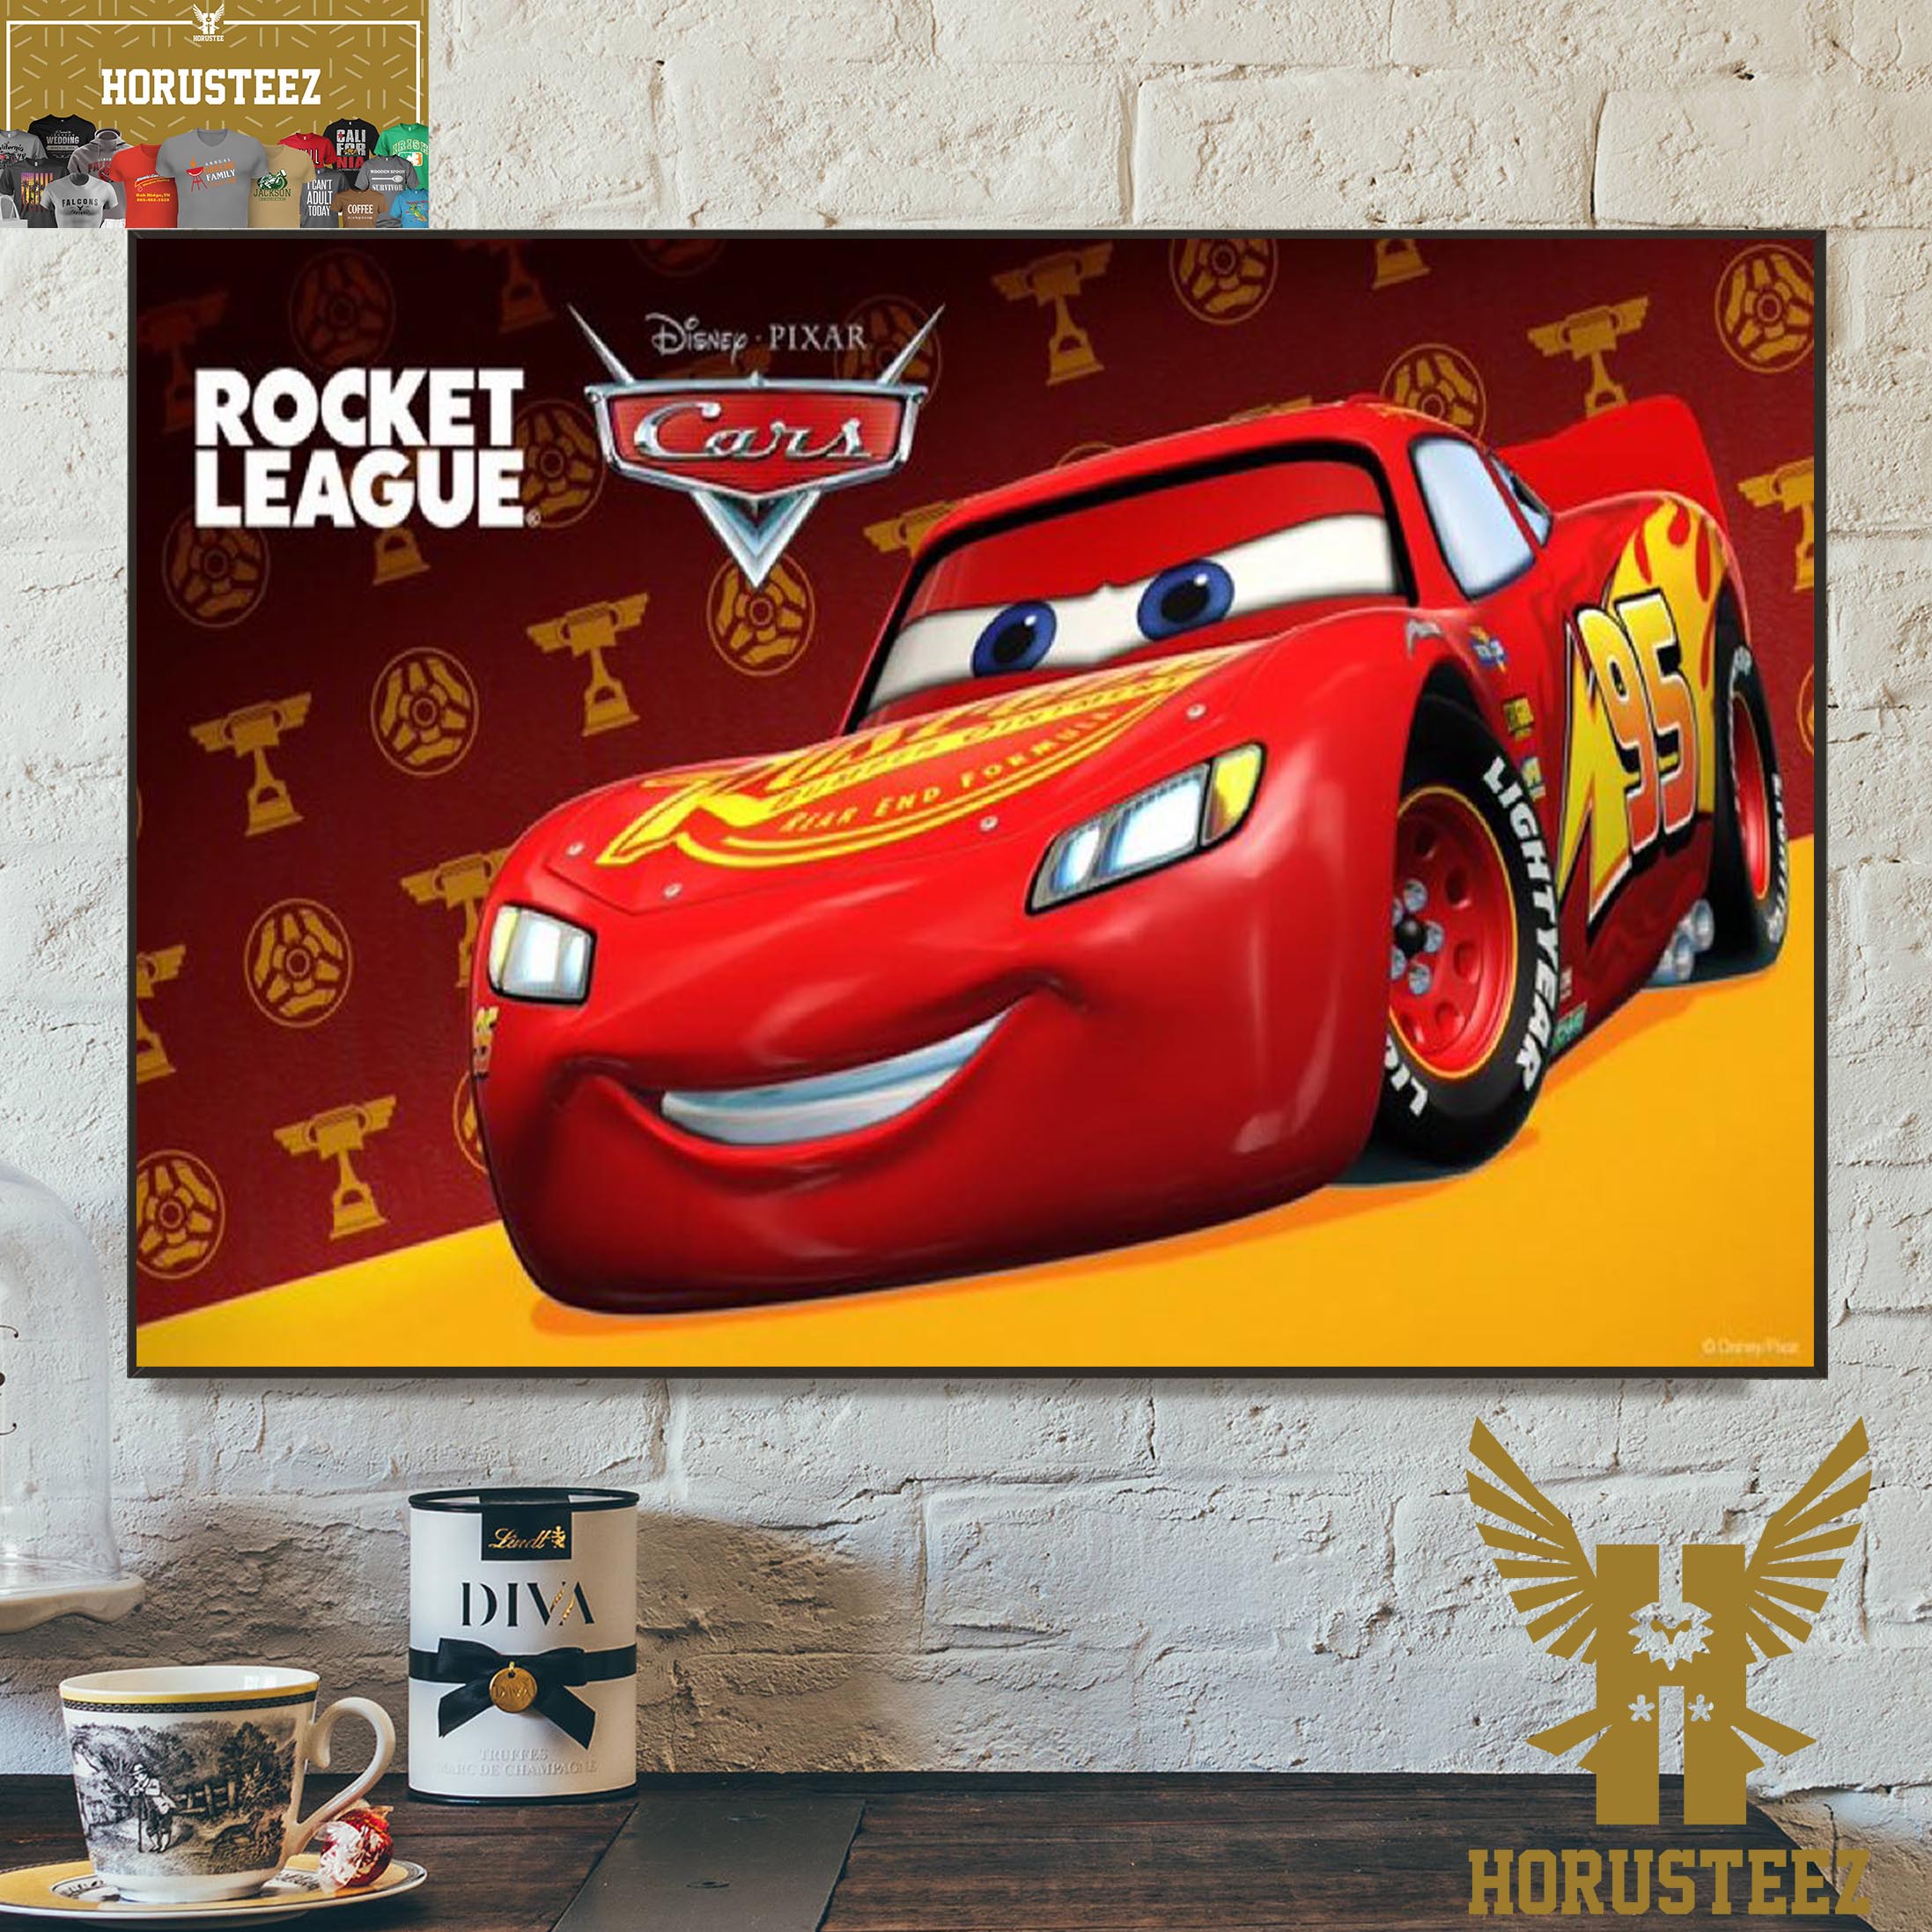 Rocket League Lightning McQueen Car 